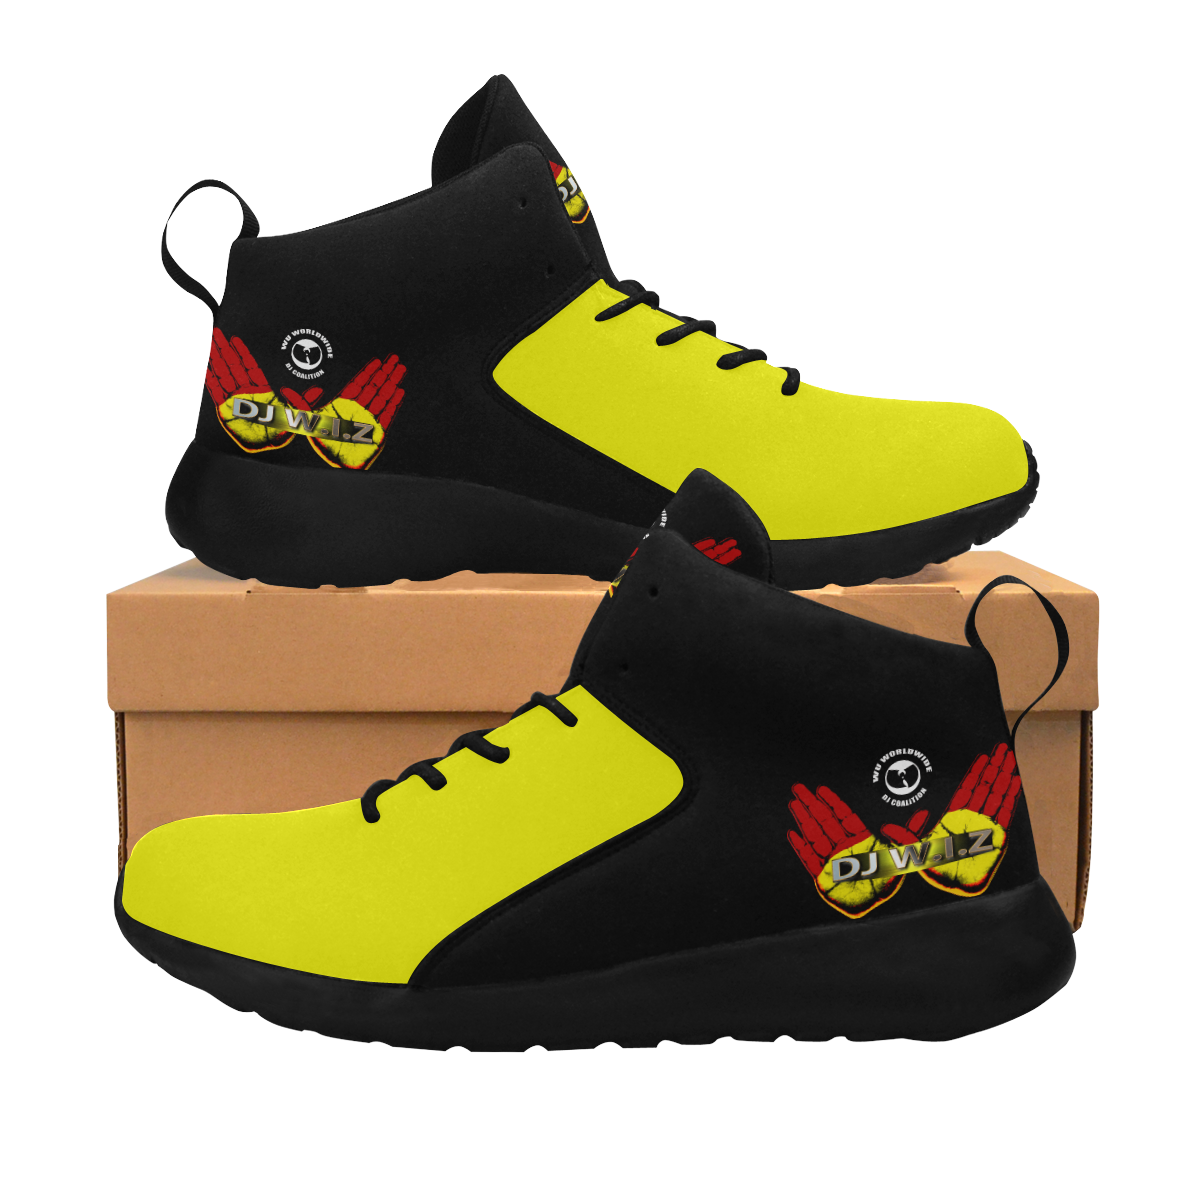 DJ W.I.Z WuShoe Yellow Men's Chukka Training Shoes (Model 57502)